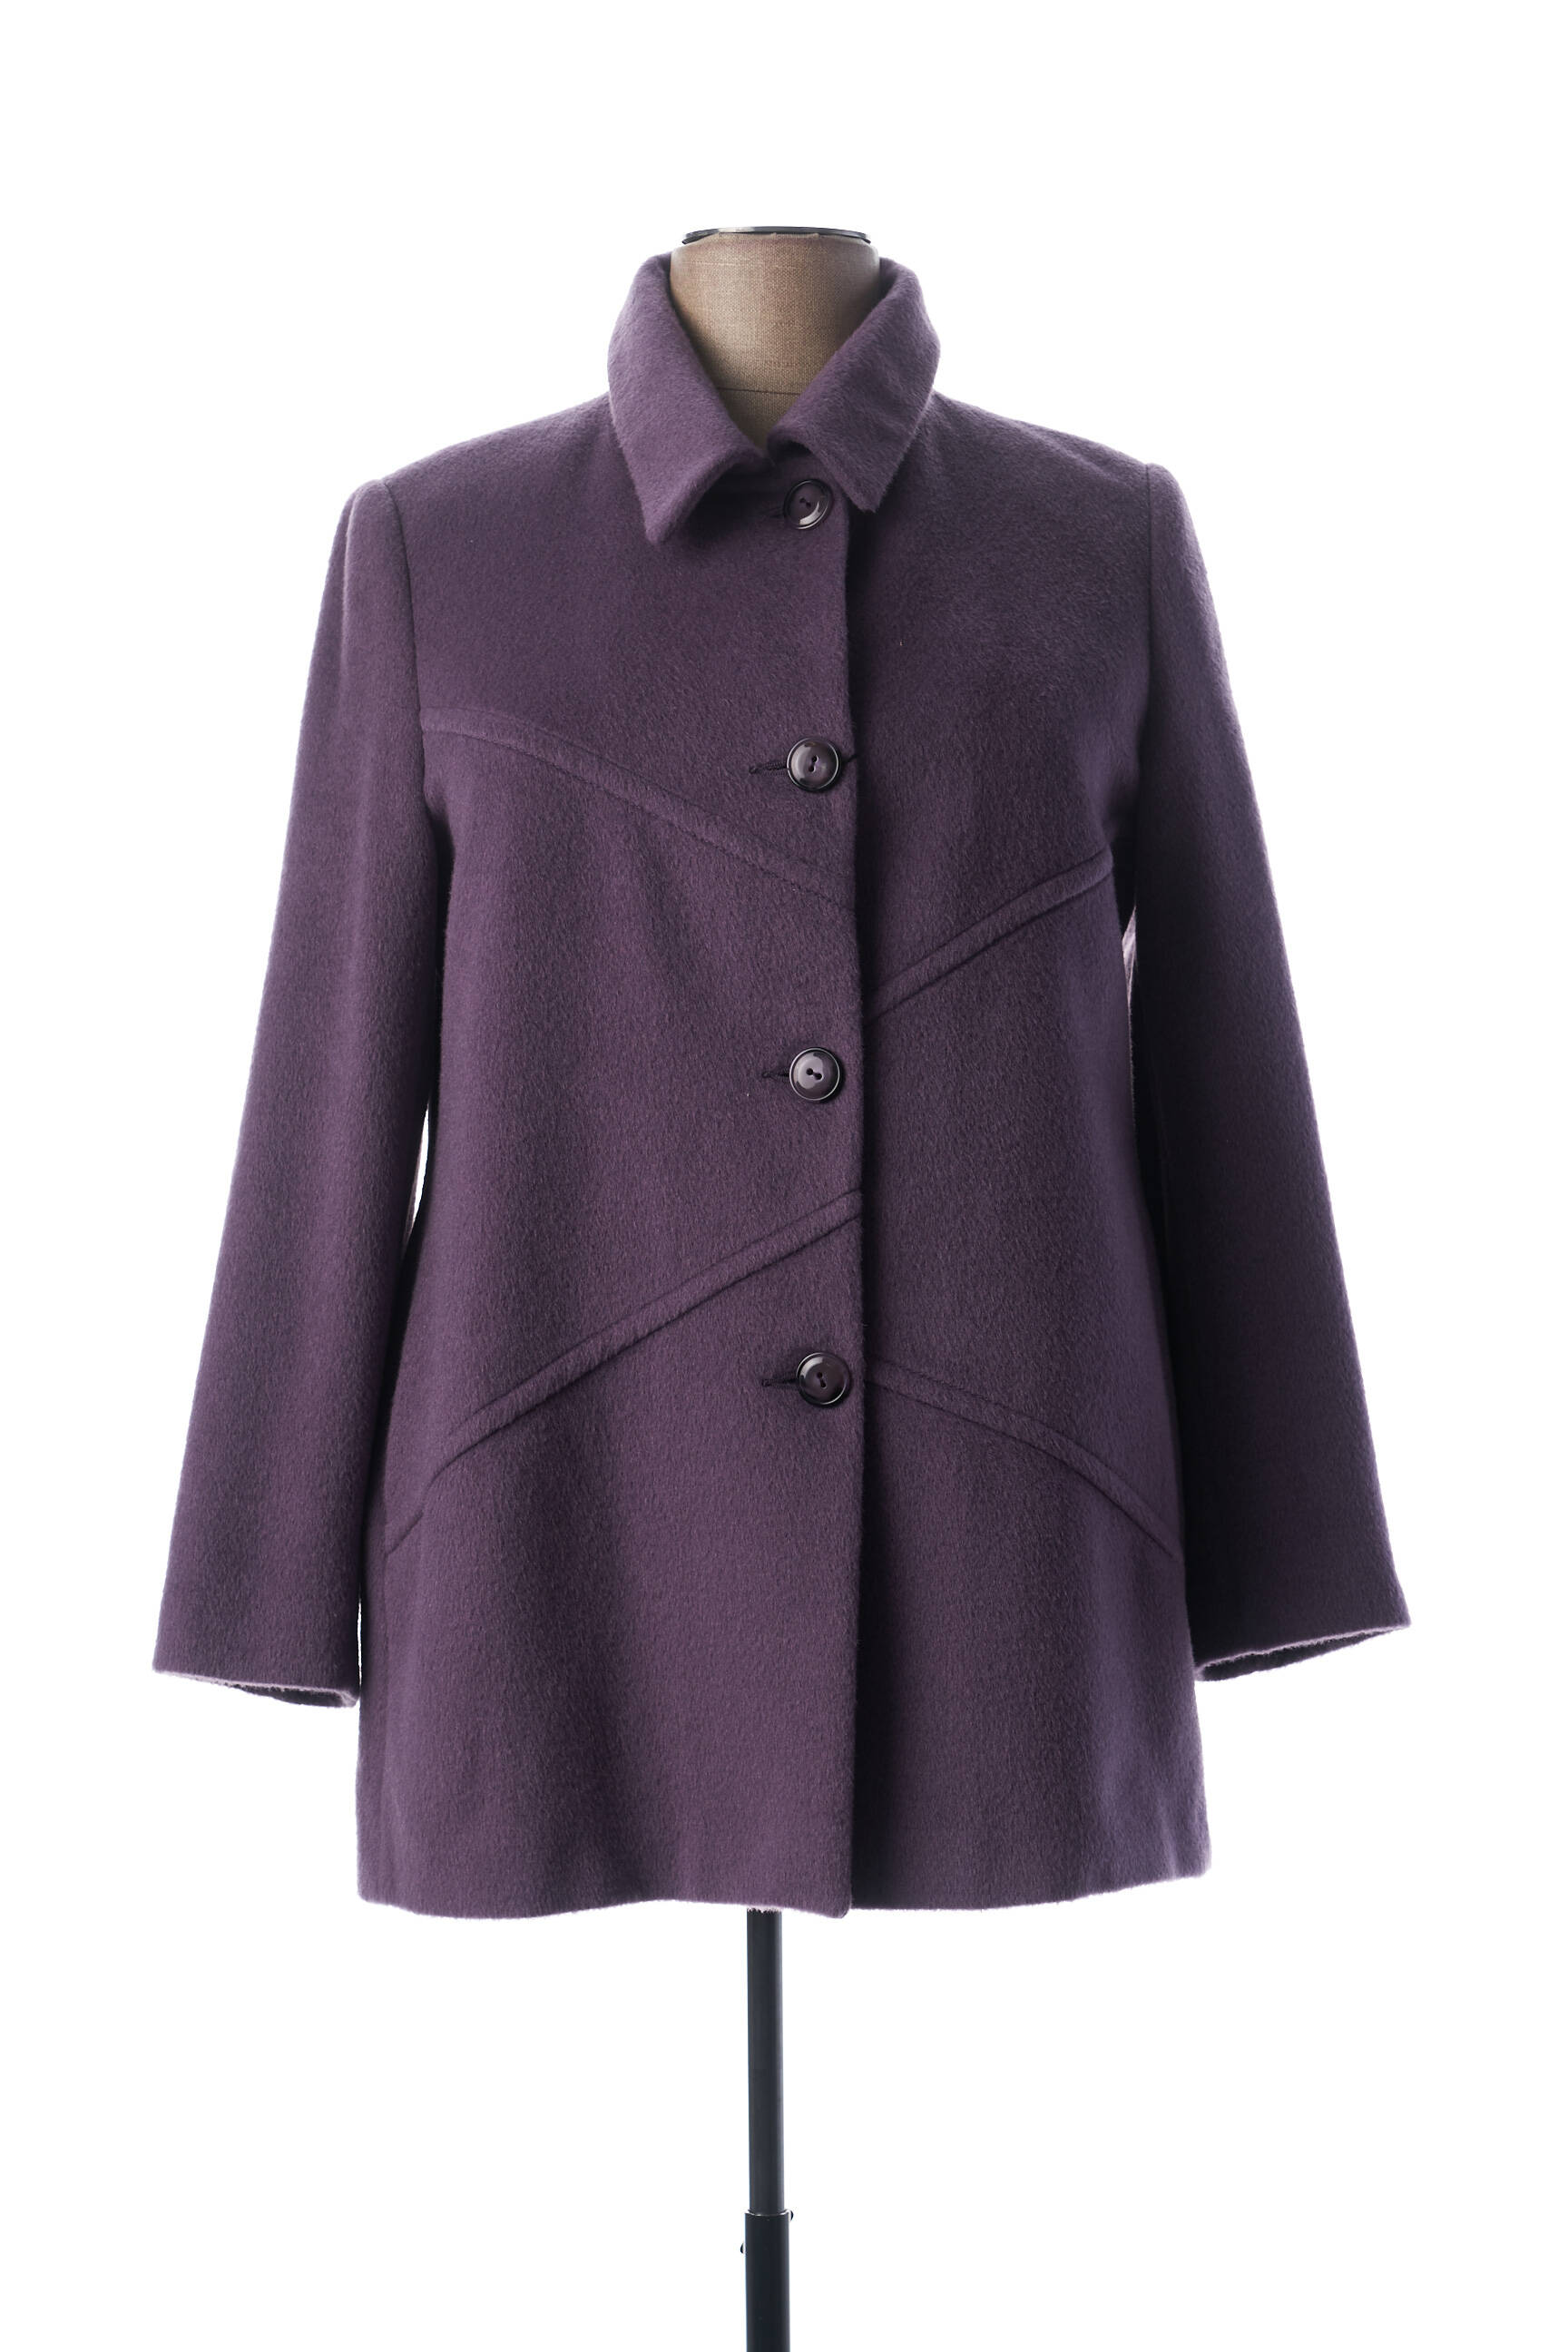 manteaux violet femme